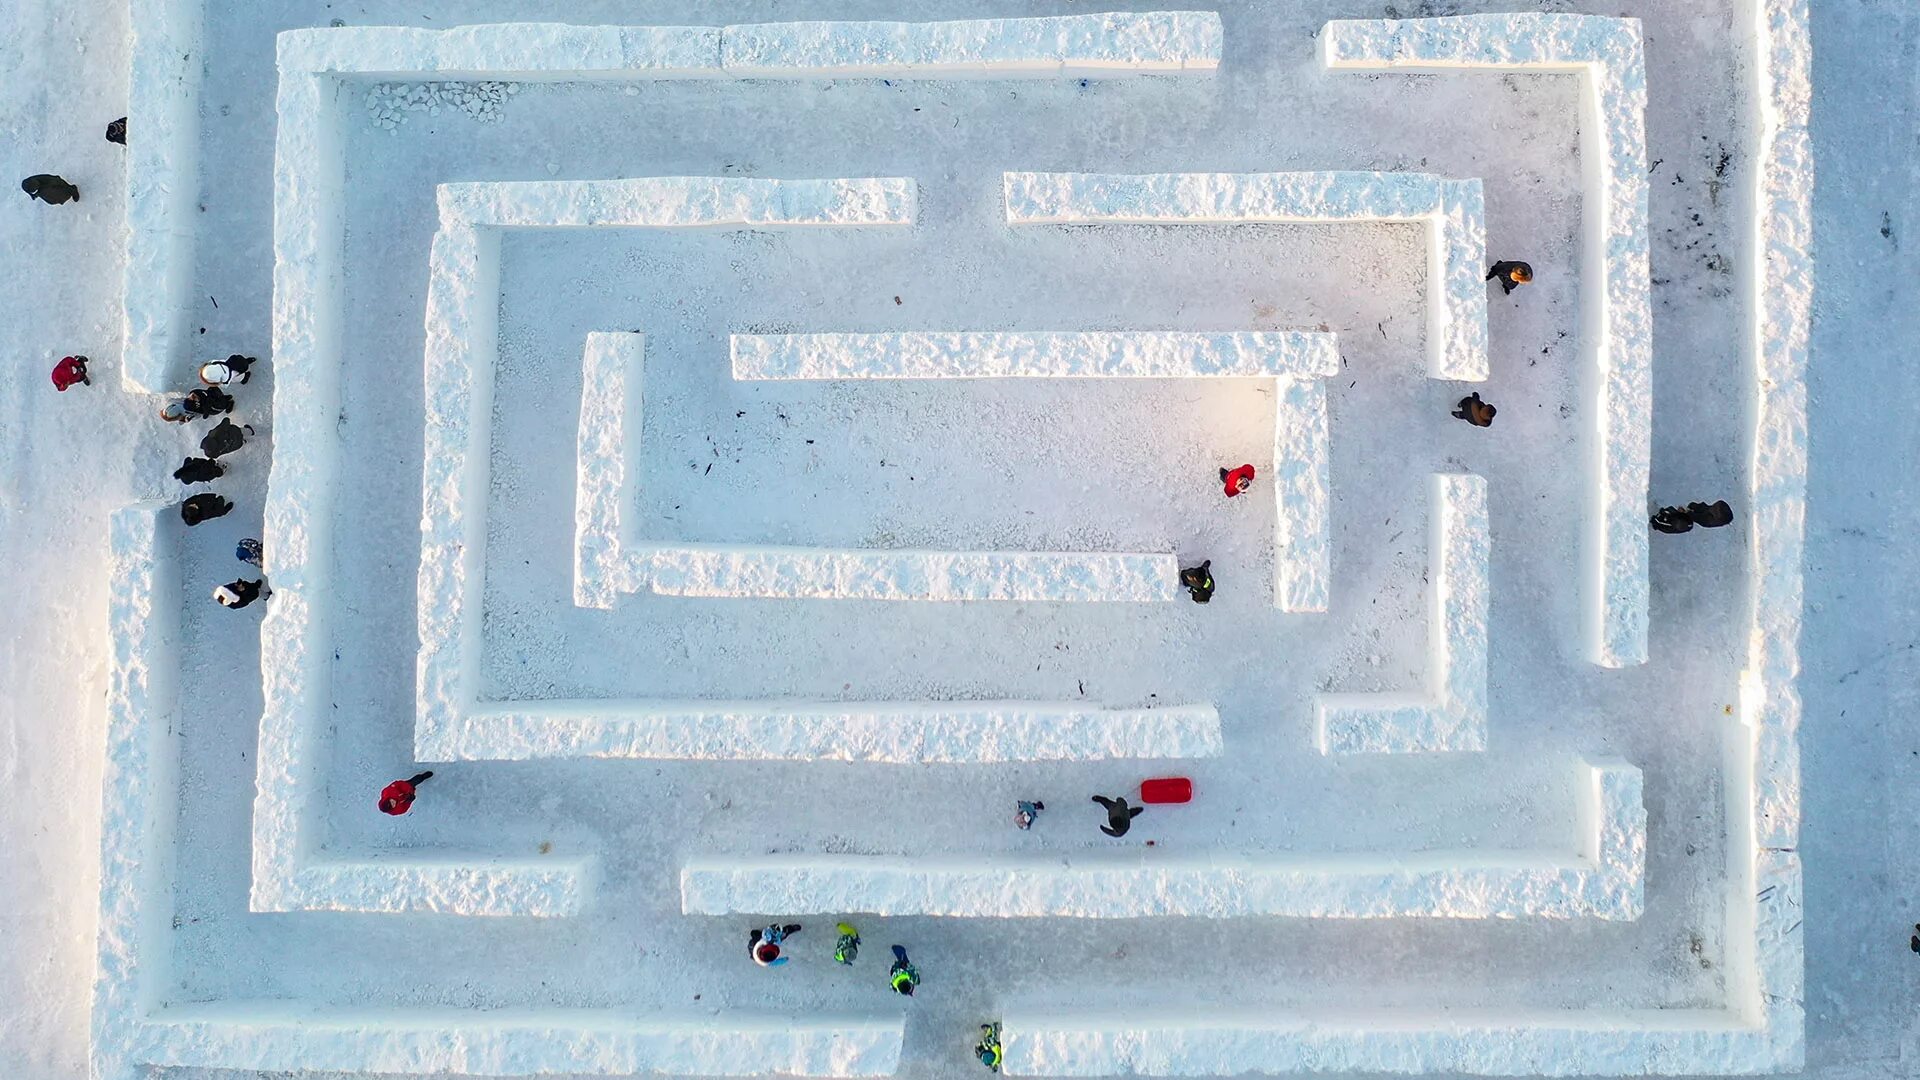 Лабиринт из снега. Лабиринт из снега в детском саду. Снежный Лабиринт для детей. Ледяной Лабиринт. Посмотри ка на этот ледовый лабиринт